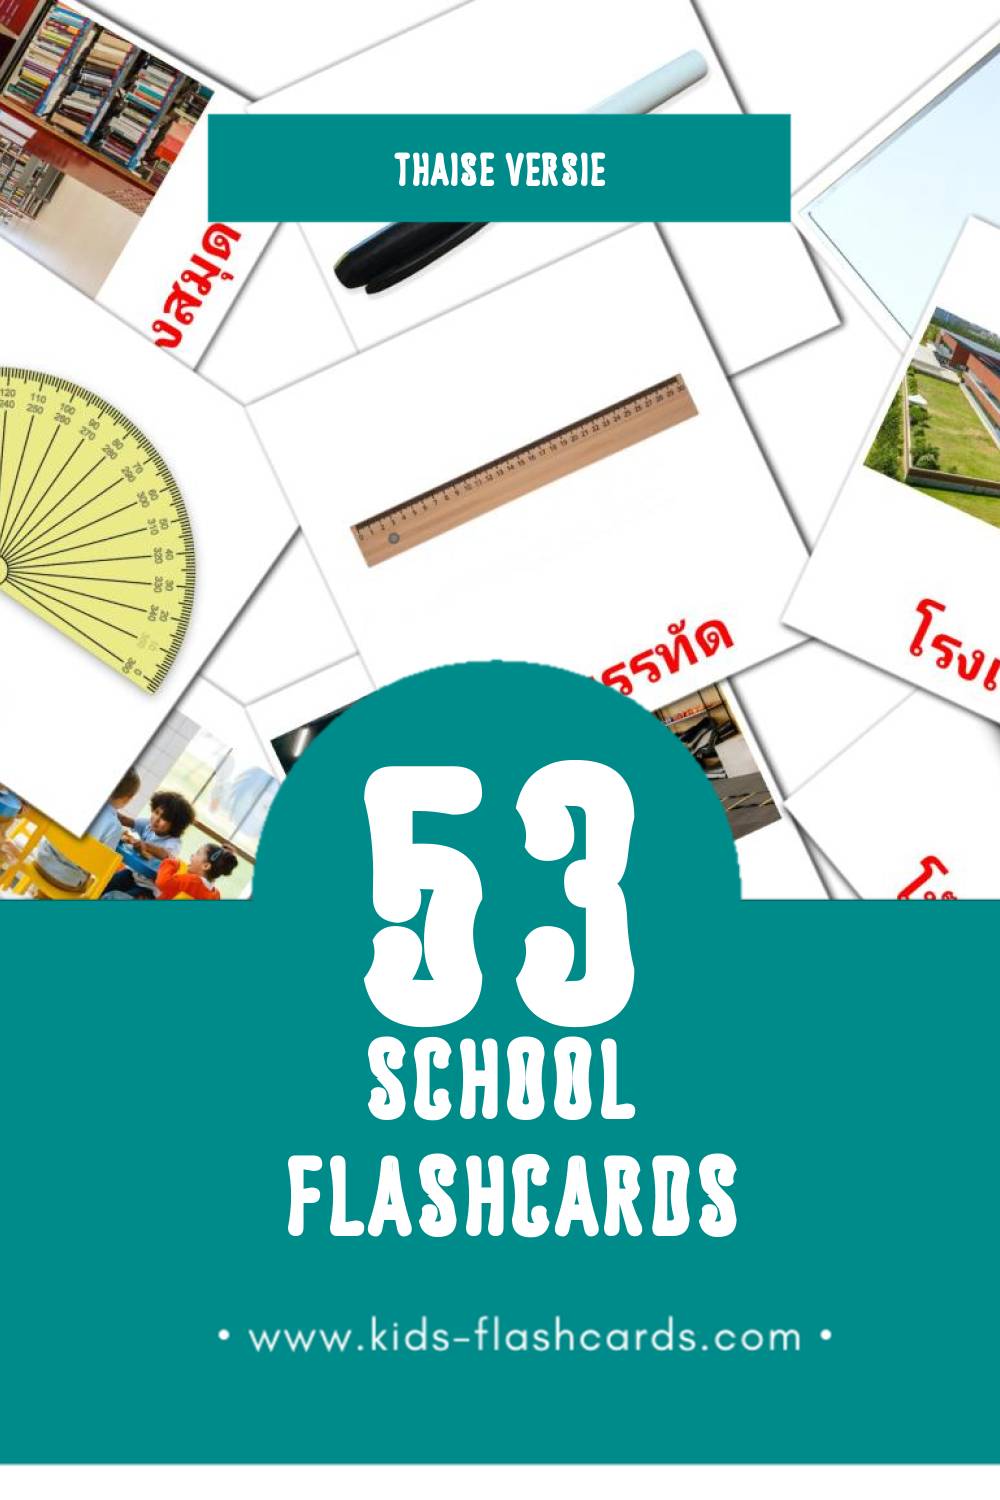 Visuele โรงเรียน Flashcards voor Kleuters (53 kaarten in het Thais)